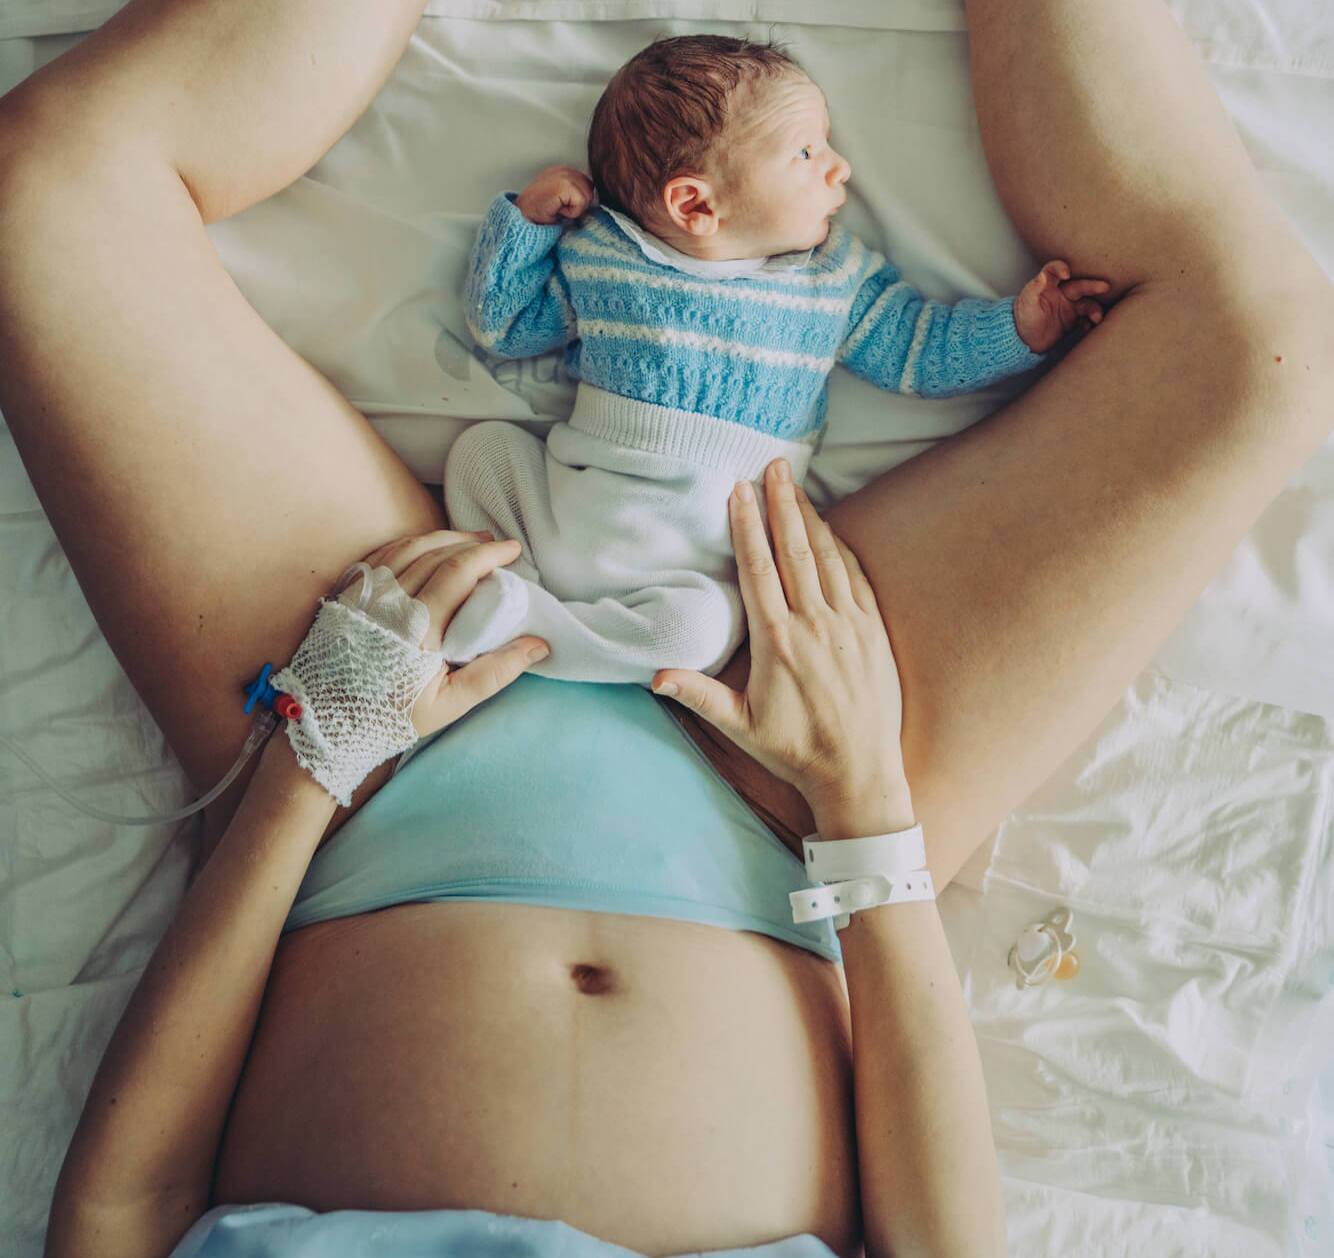 Undies, Support Wear, & More – Hello Postpartum